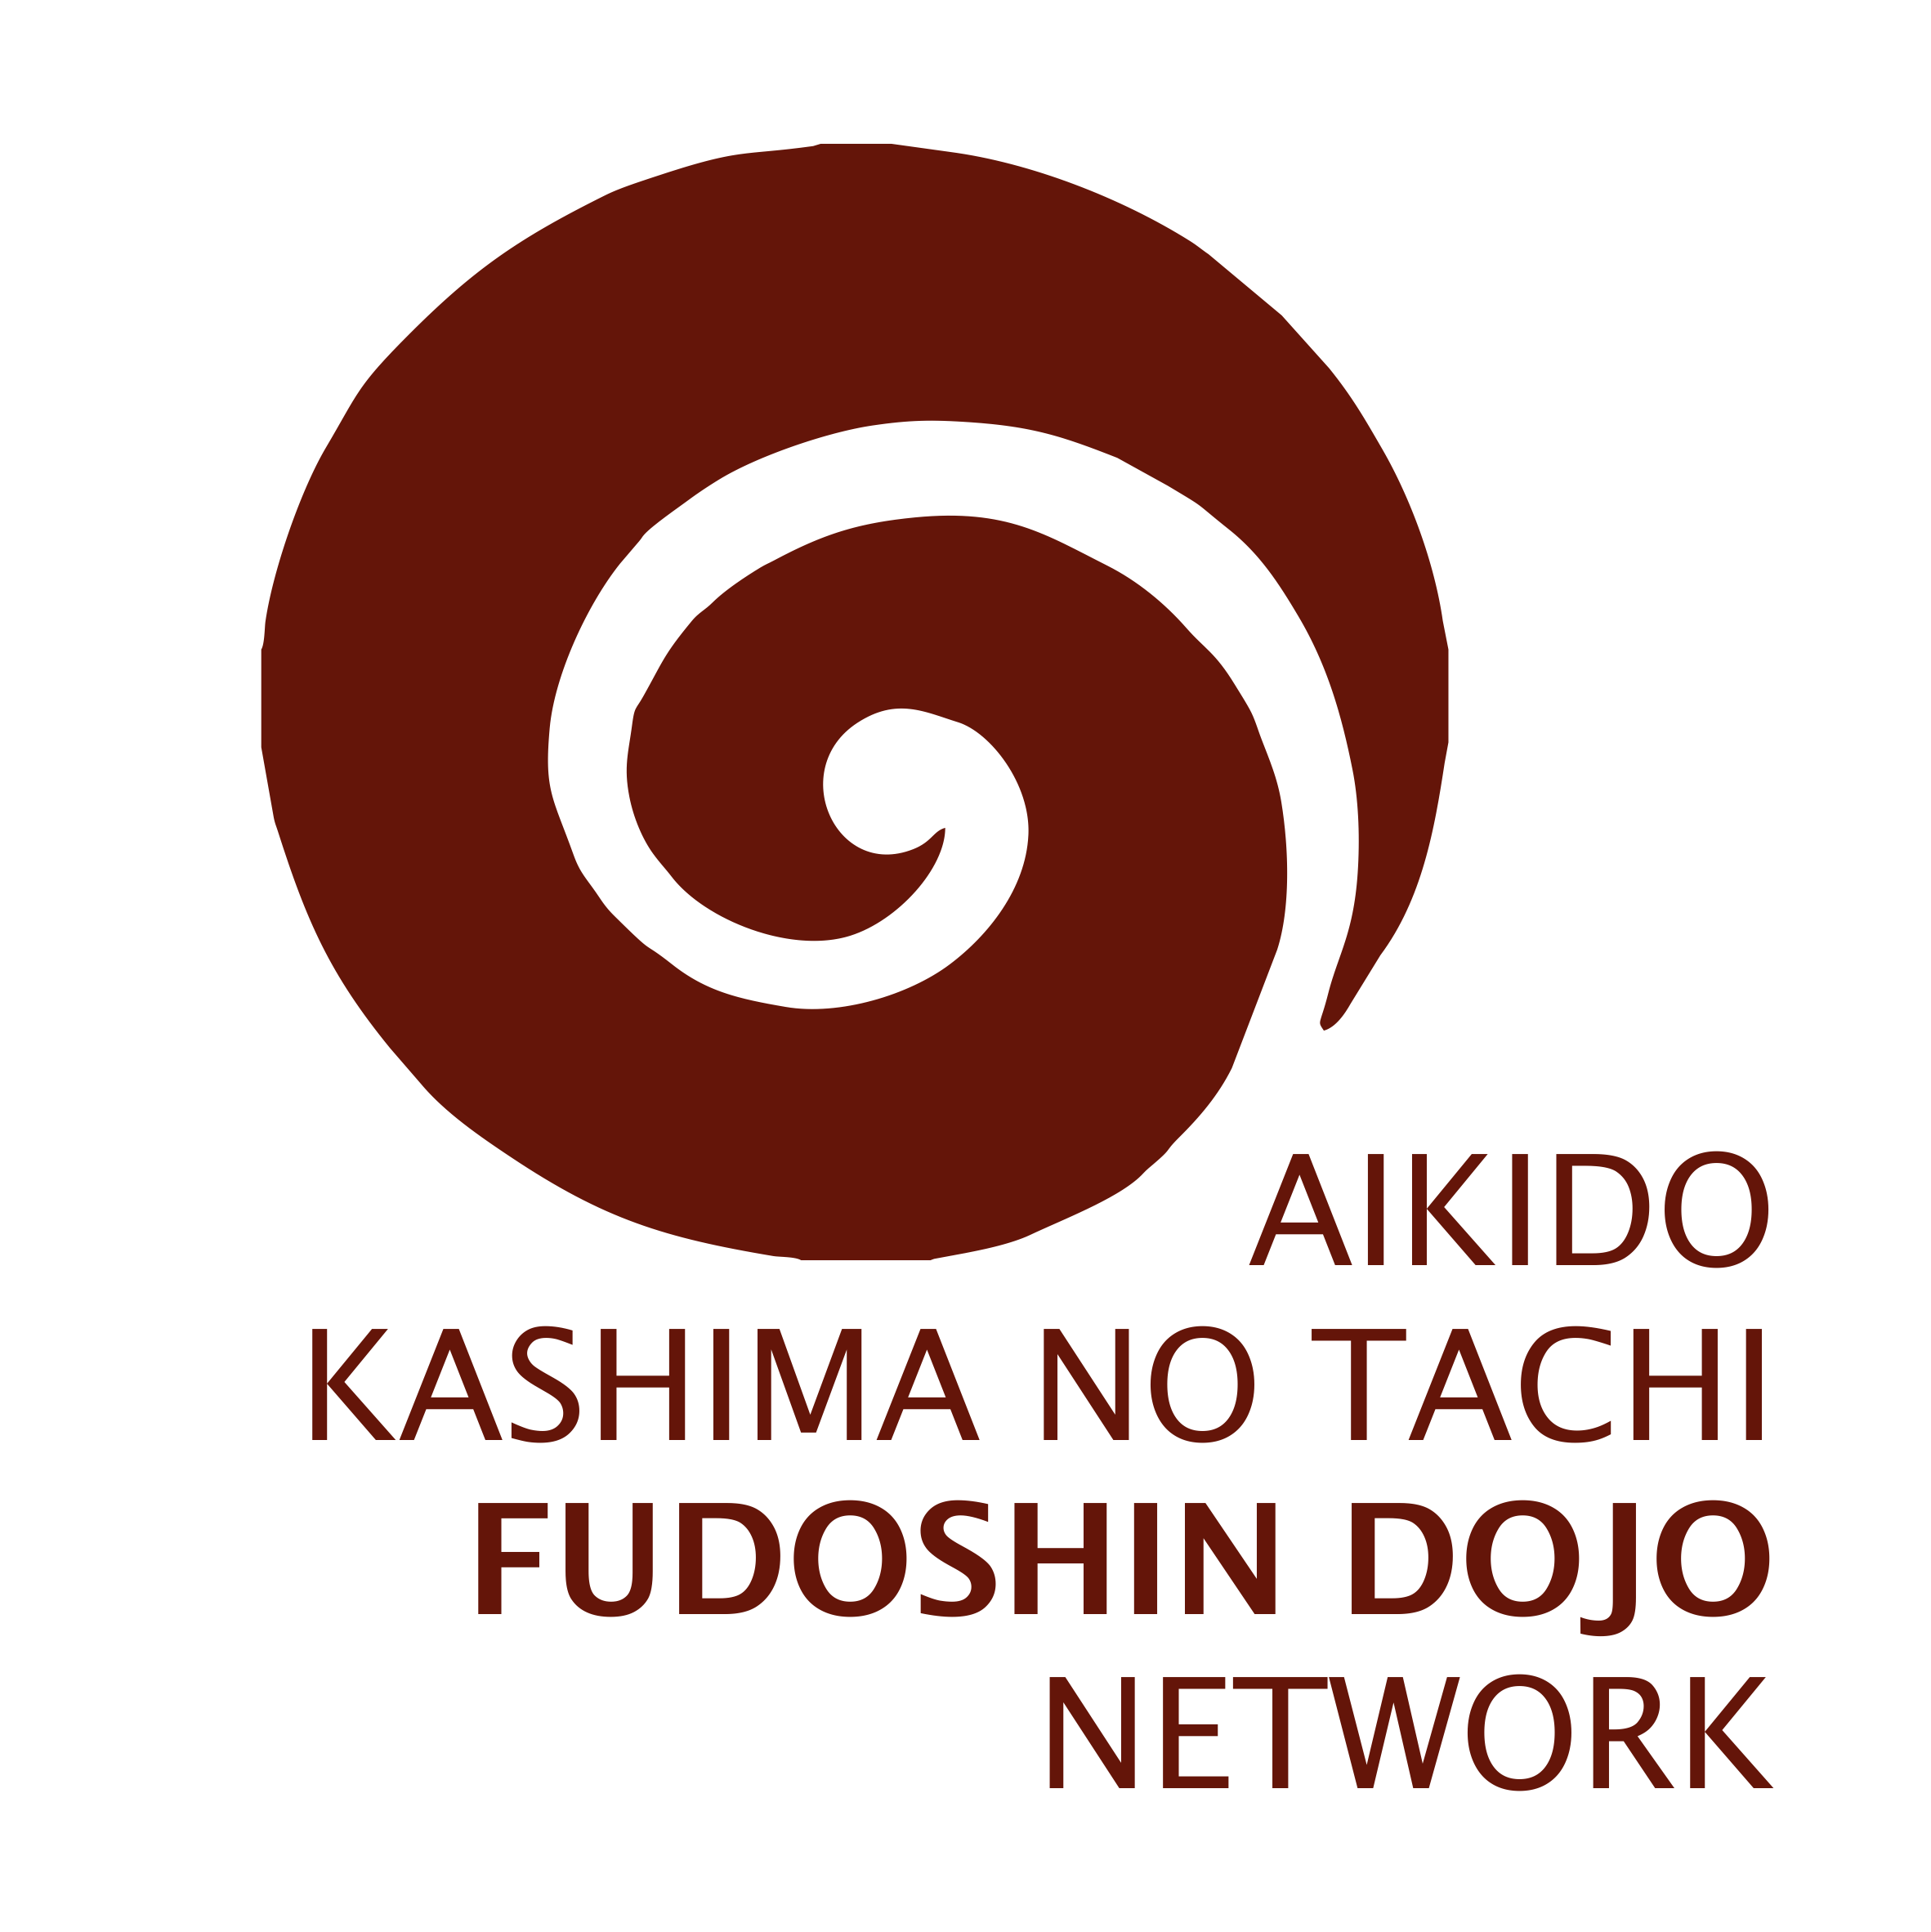 FUDOSCHIN DOJO NETWORK - AIKIDO - KASHIMA NO TACHI